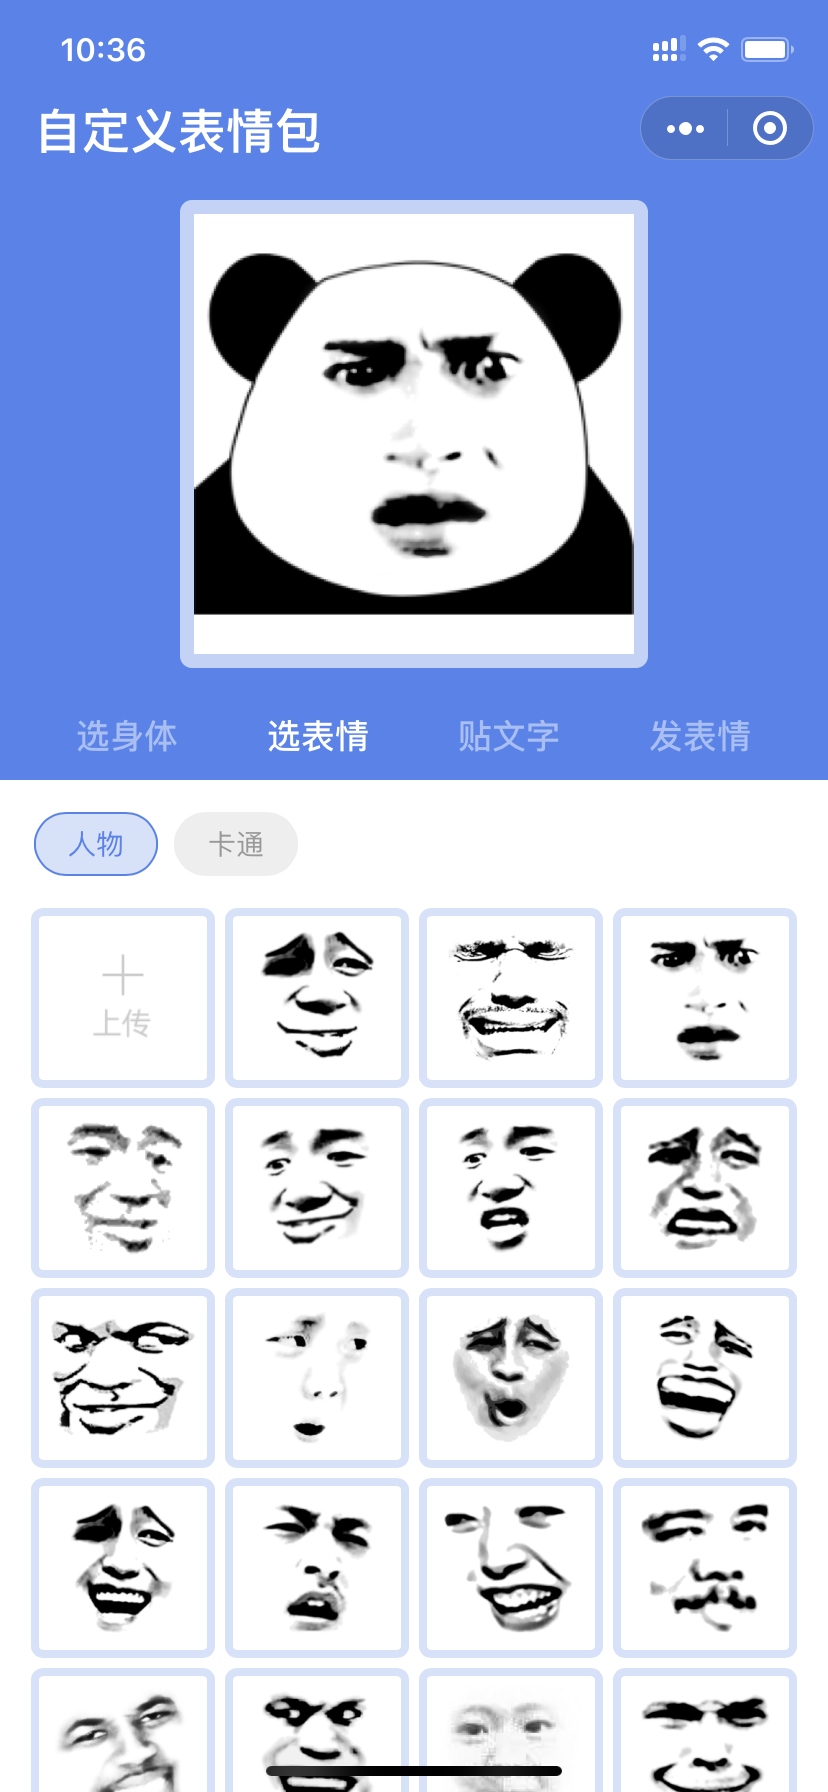 一 斗图表情包制作小程序_自定义表情 一 斗图表情包制作微信小程序